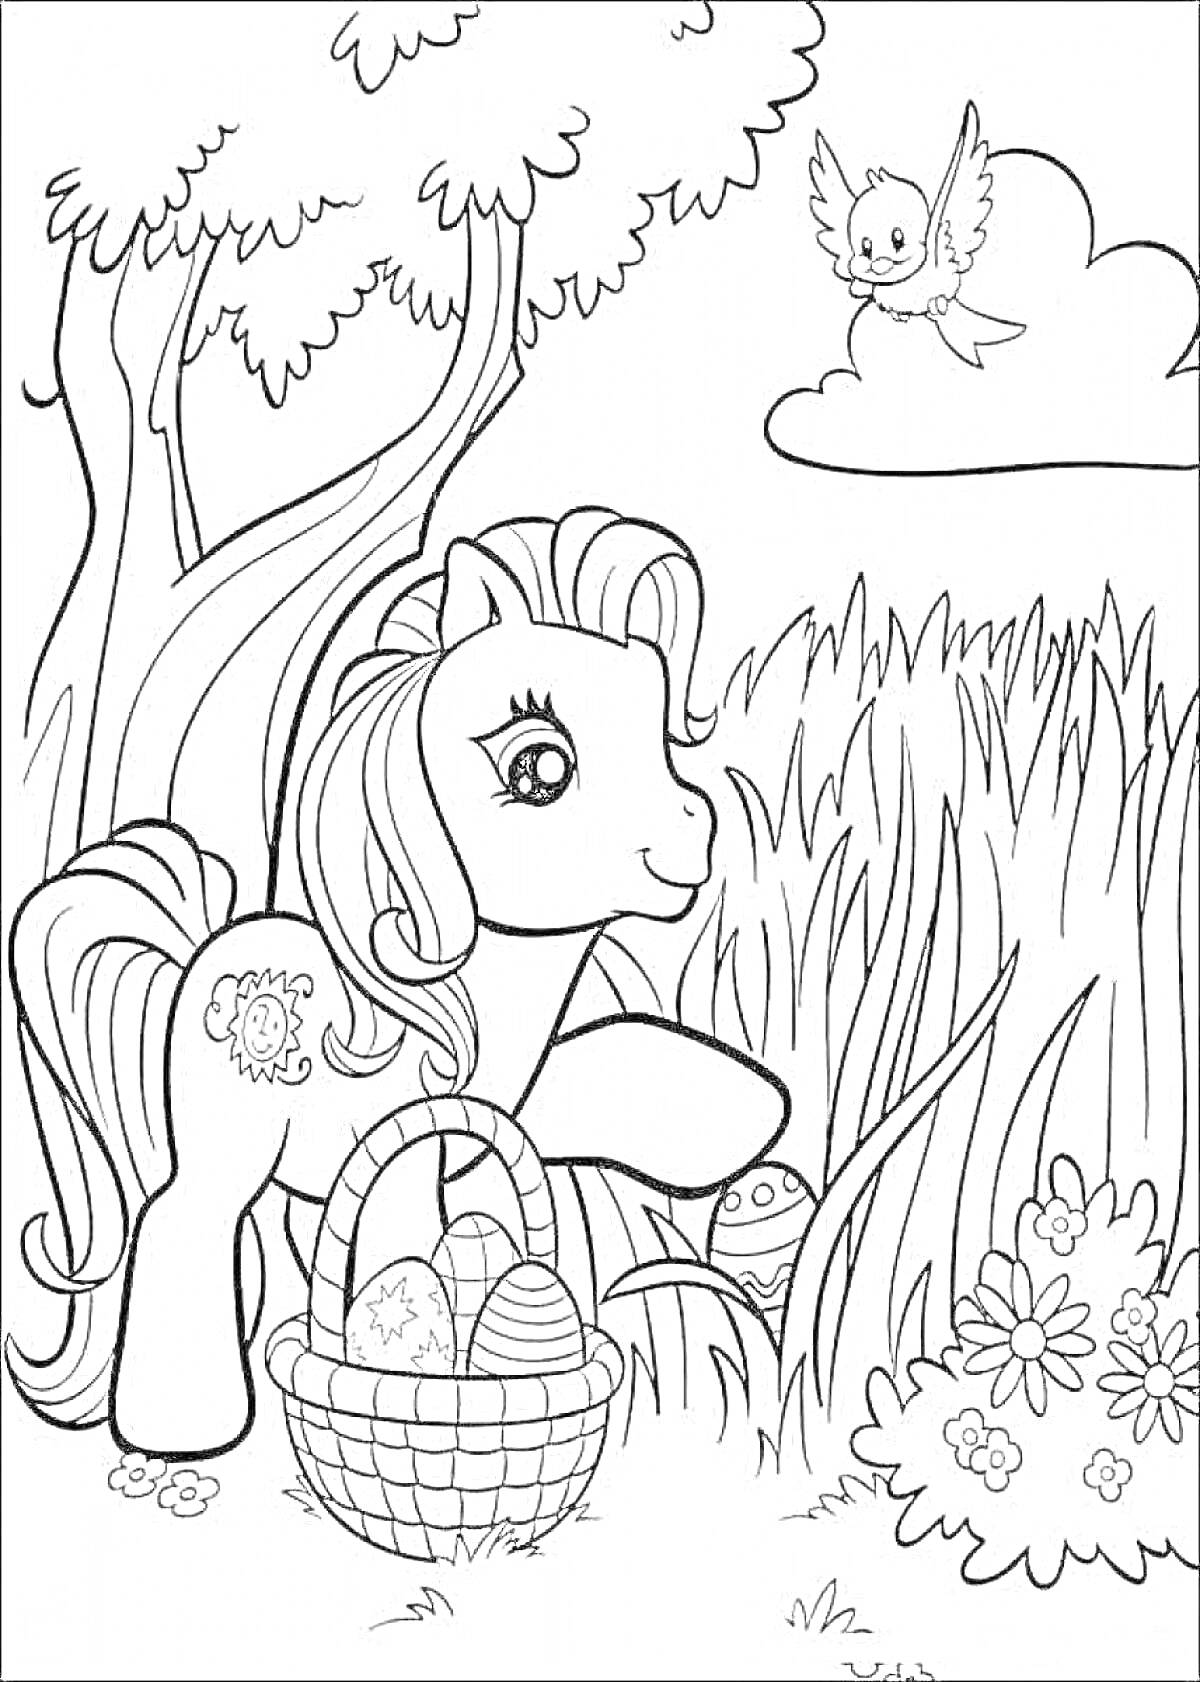 Раскраска Пони с корзиной на поляне, в траве пасхальные яйца, на заднем плане деревья и птица на облаке